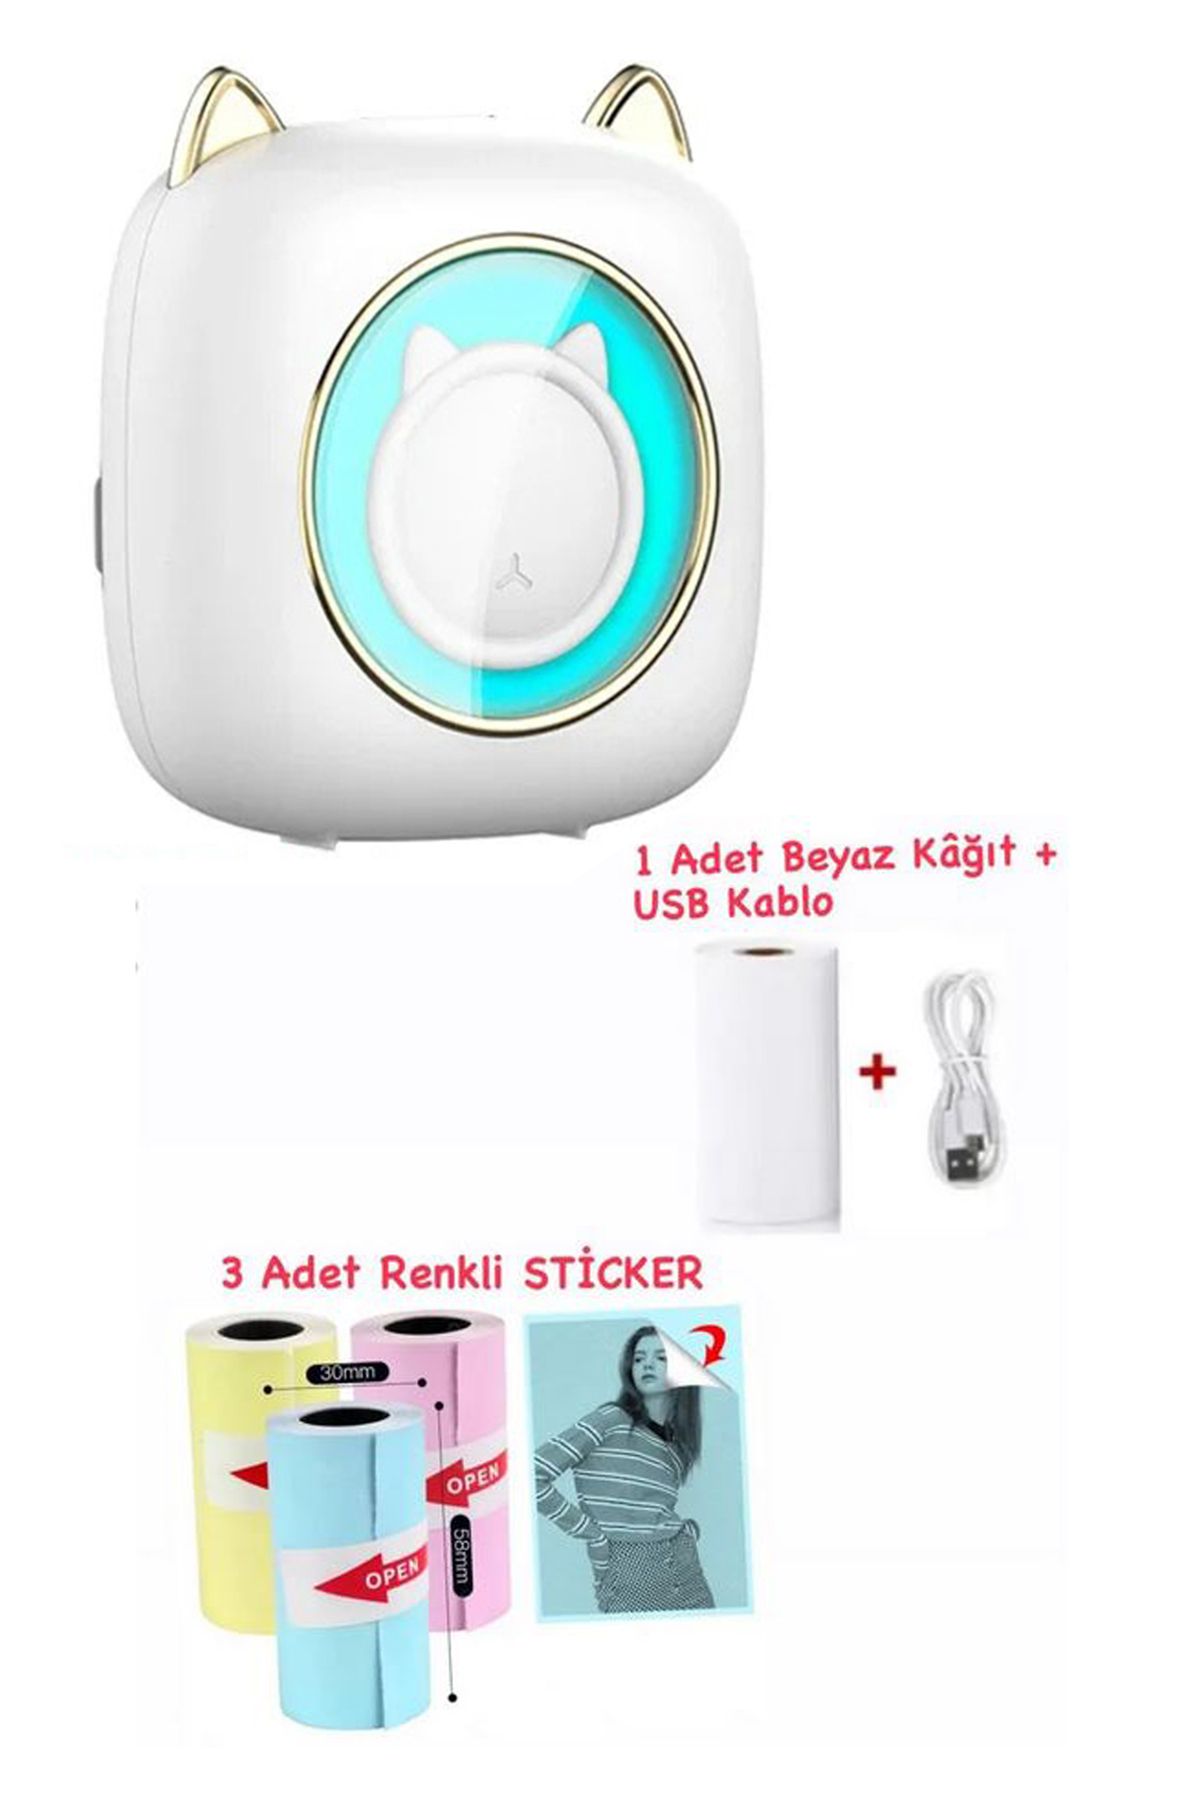 Schulzz Mini Cep Termal Yazıcı Beyaz Kedili, 1adet Beyaz, 3adet Renkli Sticker Hediyeli